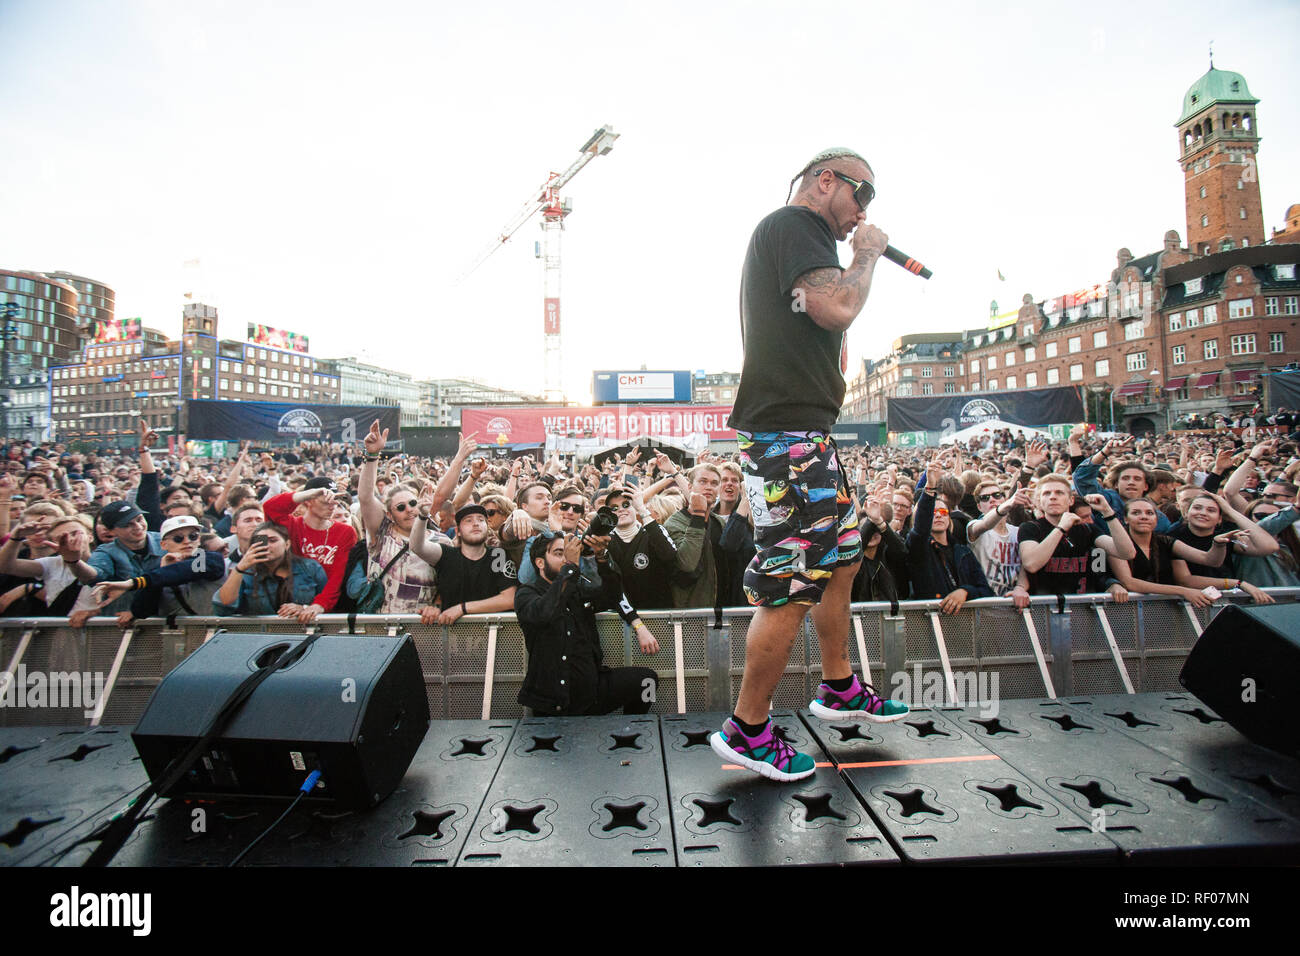 El rapero estadounidense y letrista rifi-rafe realiza un concierto en vivo durante la popular calle y Block Party festival distorsión Copenhague 2017. Dinamarca, el 01/06 de 2017. Excepto Dinamarca. Foto de stock